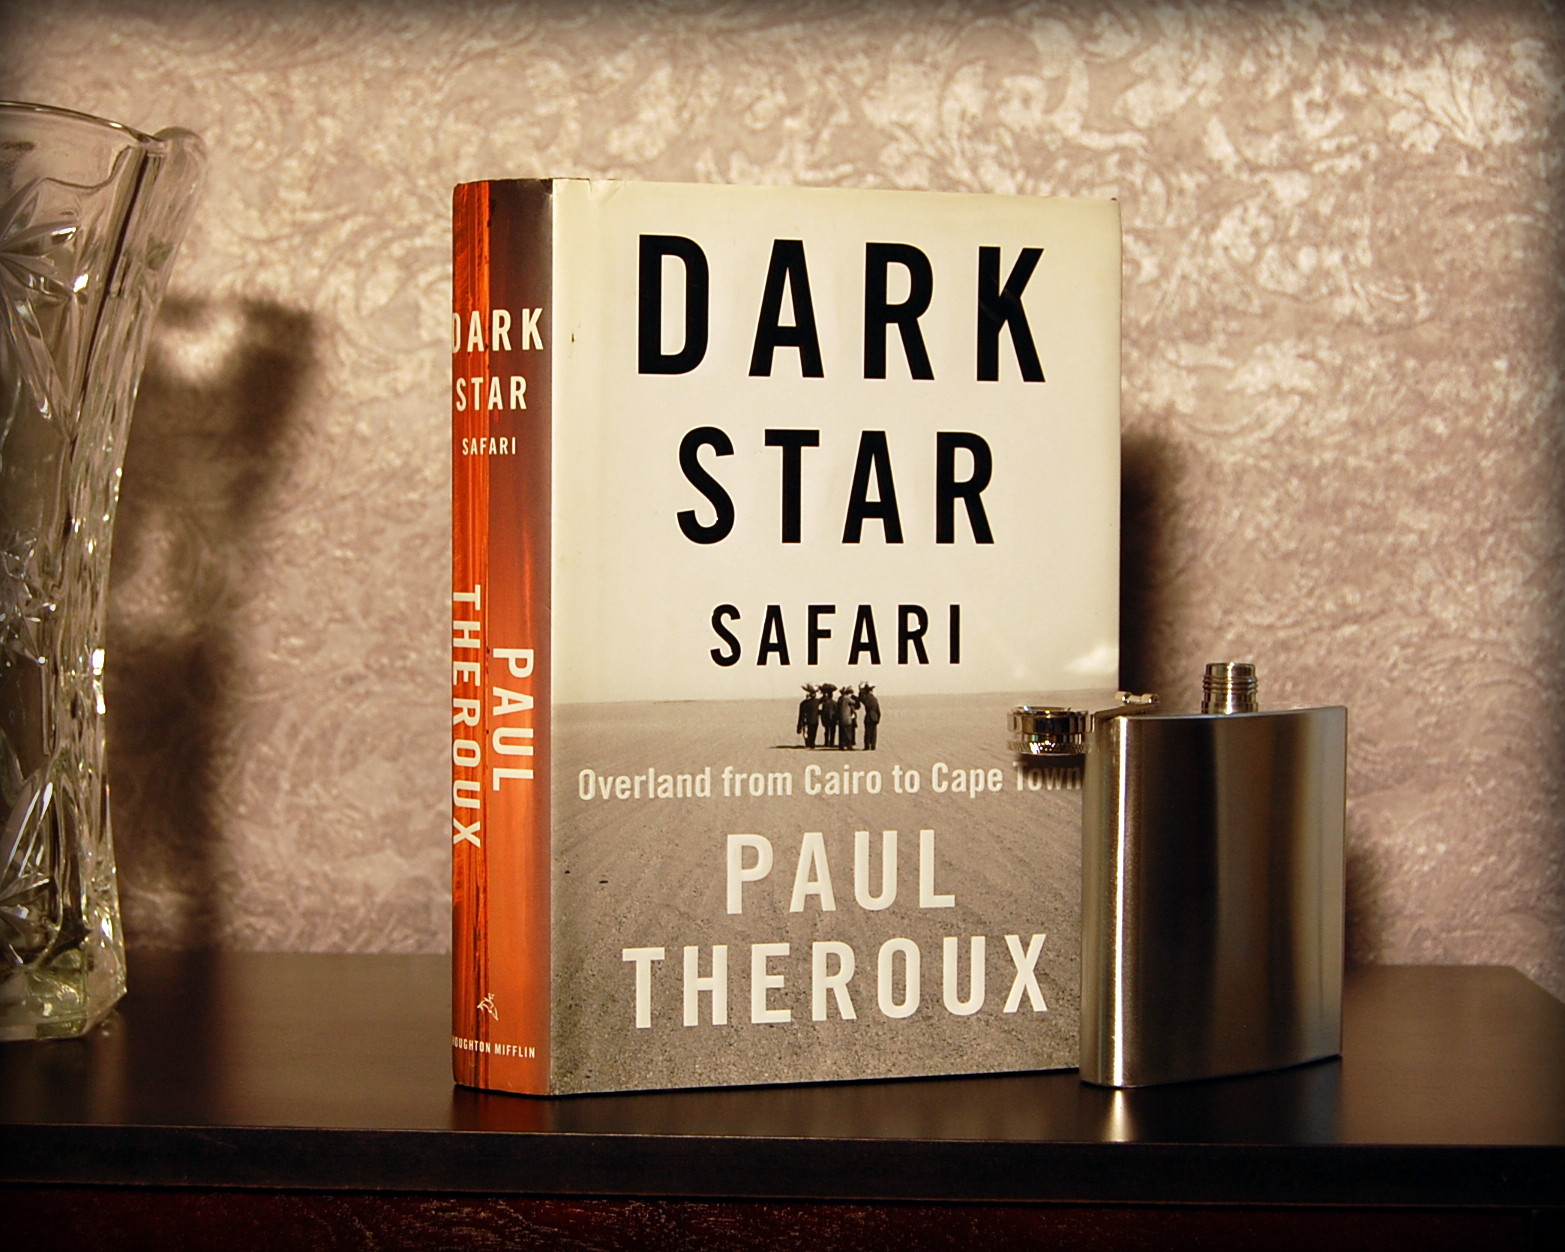 Un Libro per Viaggiare. “Dark star safari”. Dal Cairo a Città del Capo via terra, di Paul Theroux